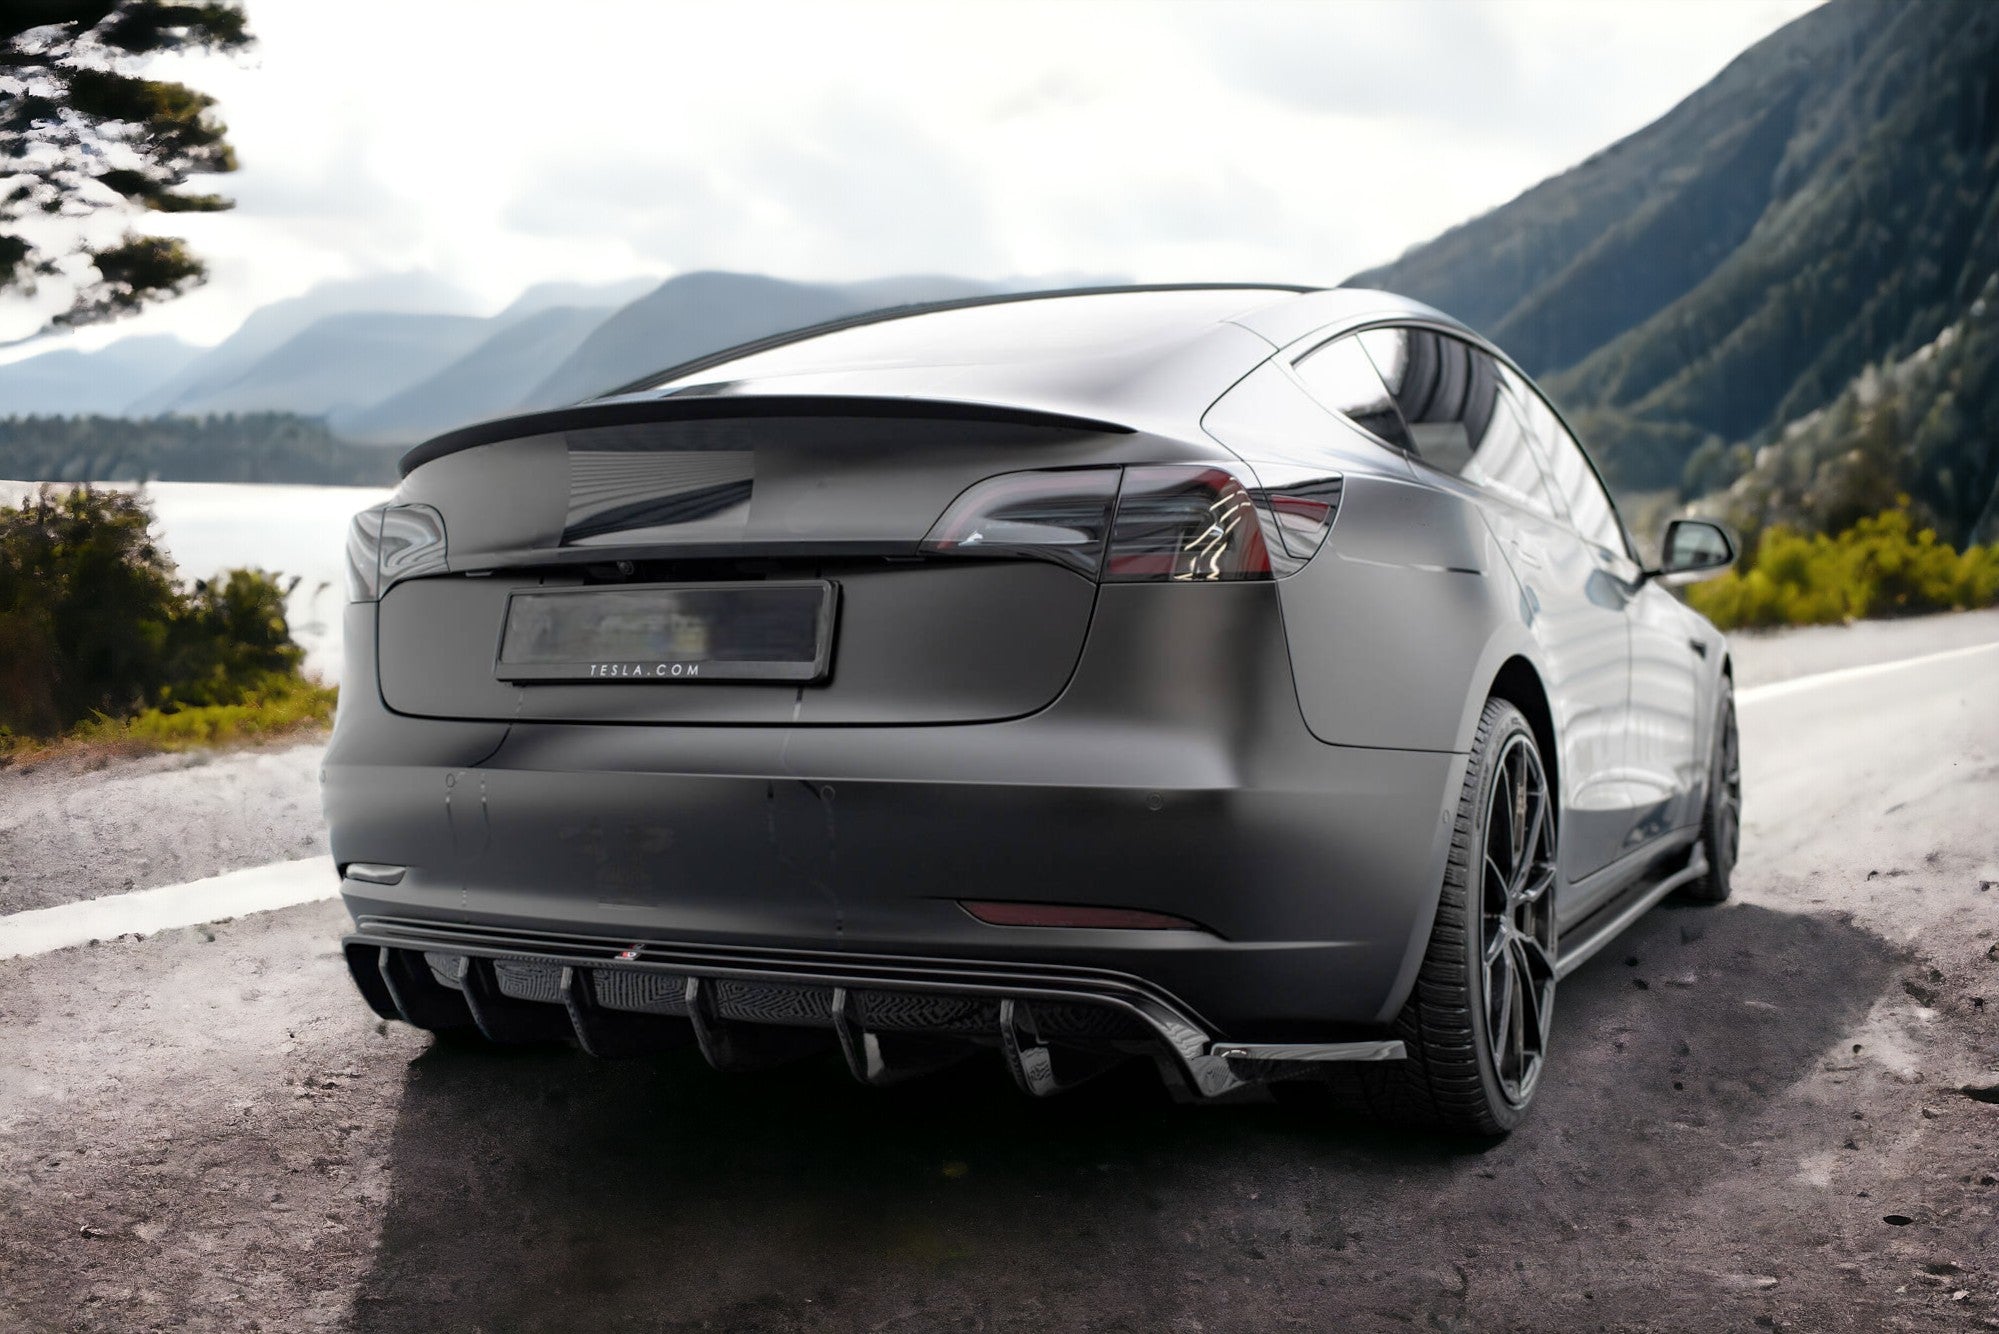 Tous les accessoires Tesla Model 3 – Allset